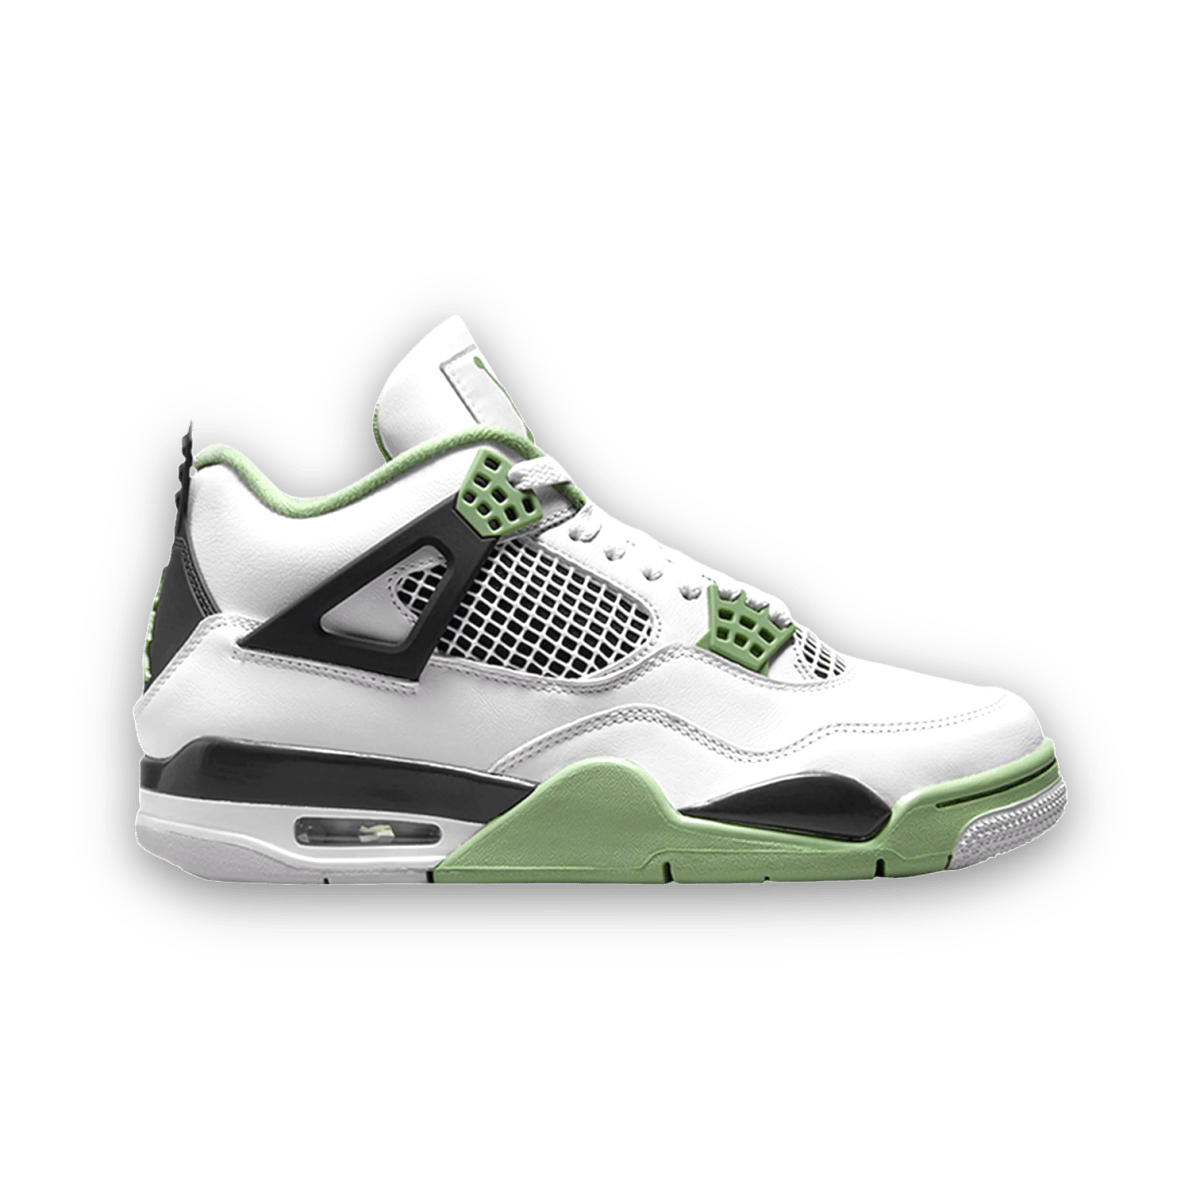 Air Jordan 4 Retro 'Seafoam' Green - Women - Mid Sneaker - Jawns on Fire Sneakers & Streetwear